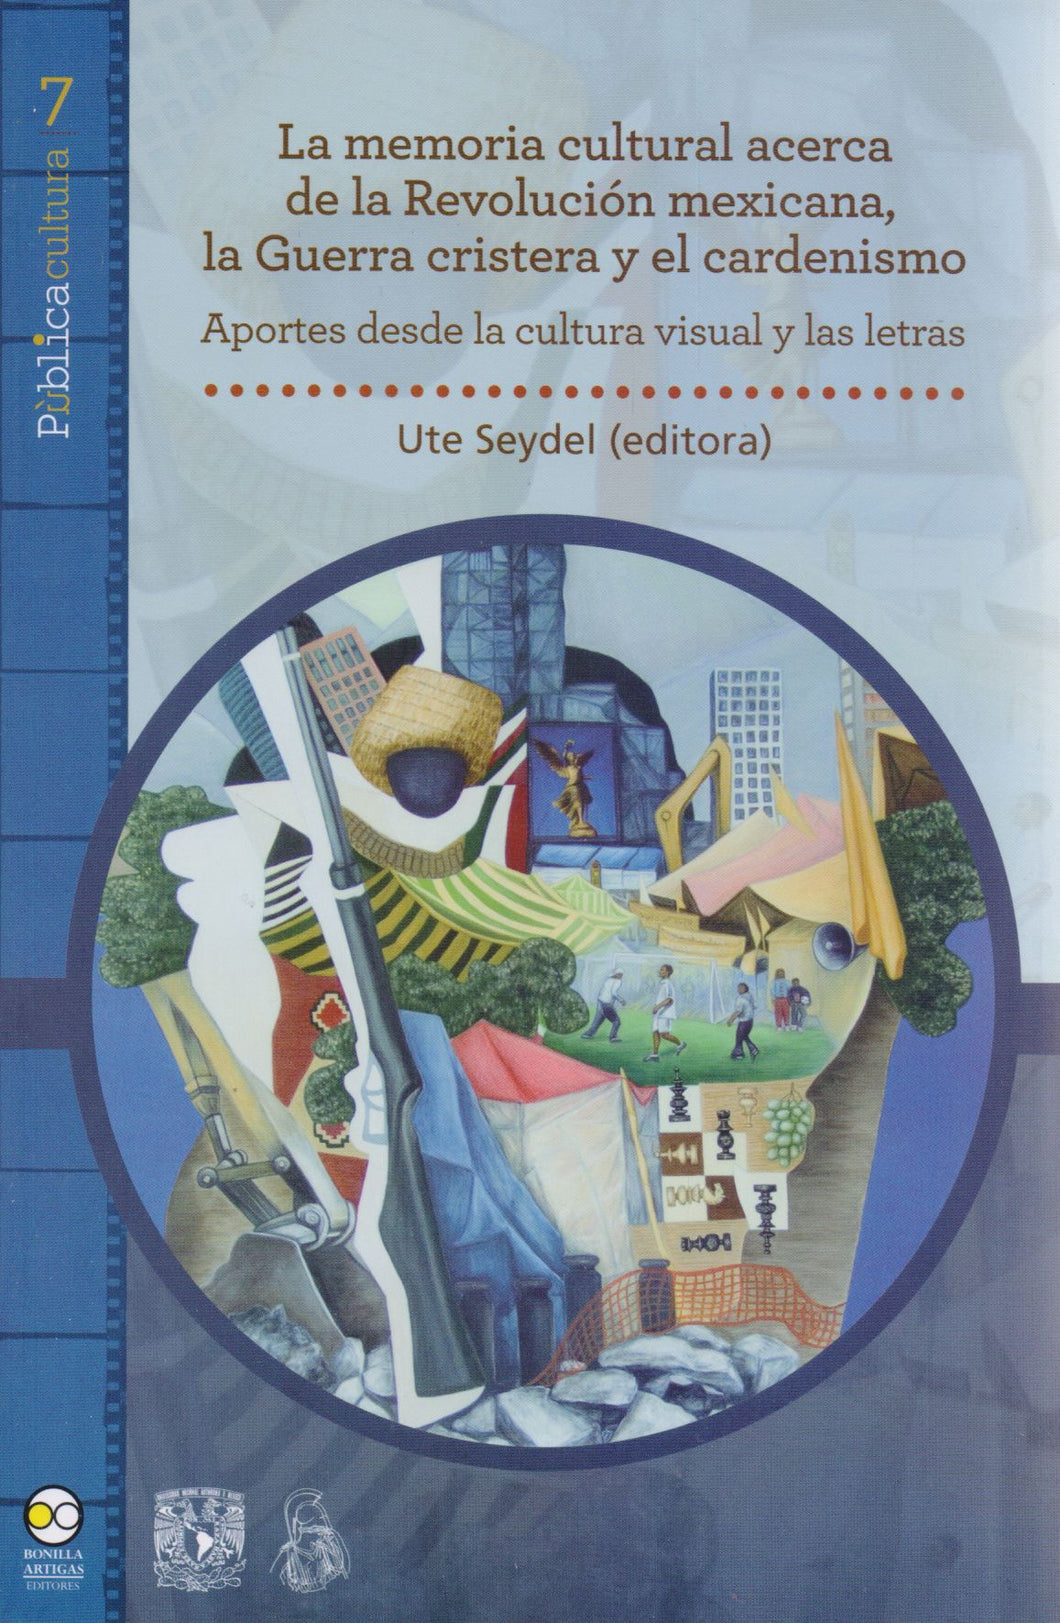 La memoria cultural acerca de la Revolución mexicana, la Guerra cristera y el cardenismo - Ute Seydel